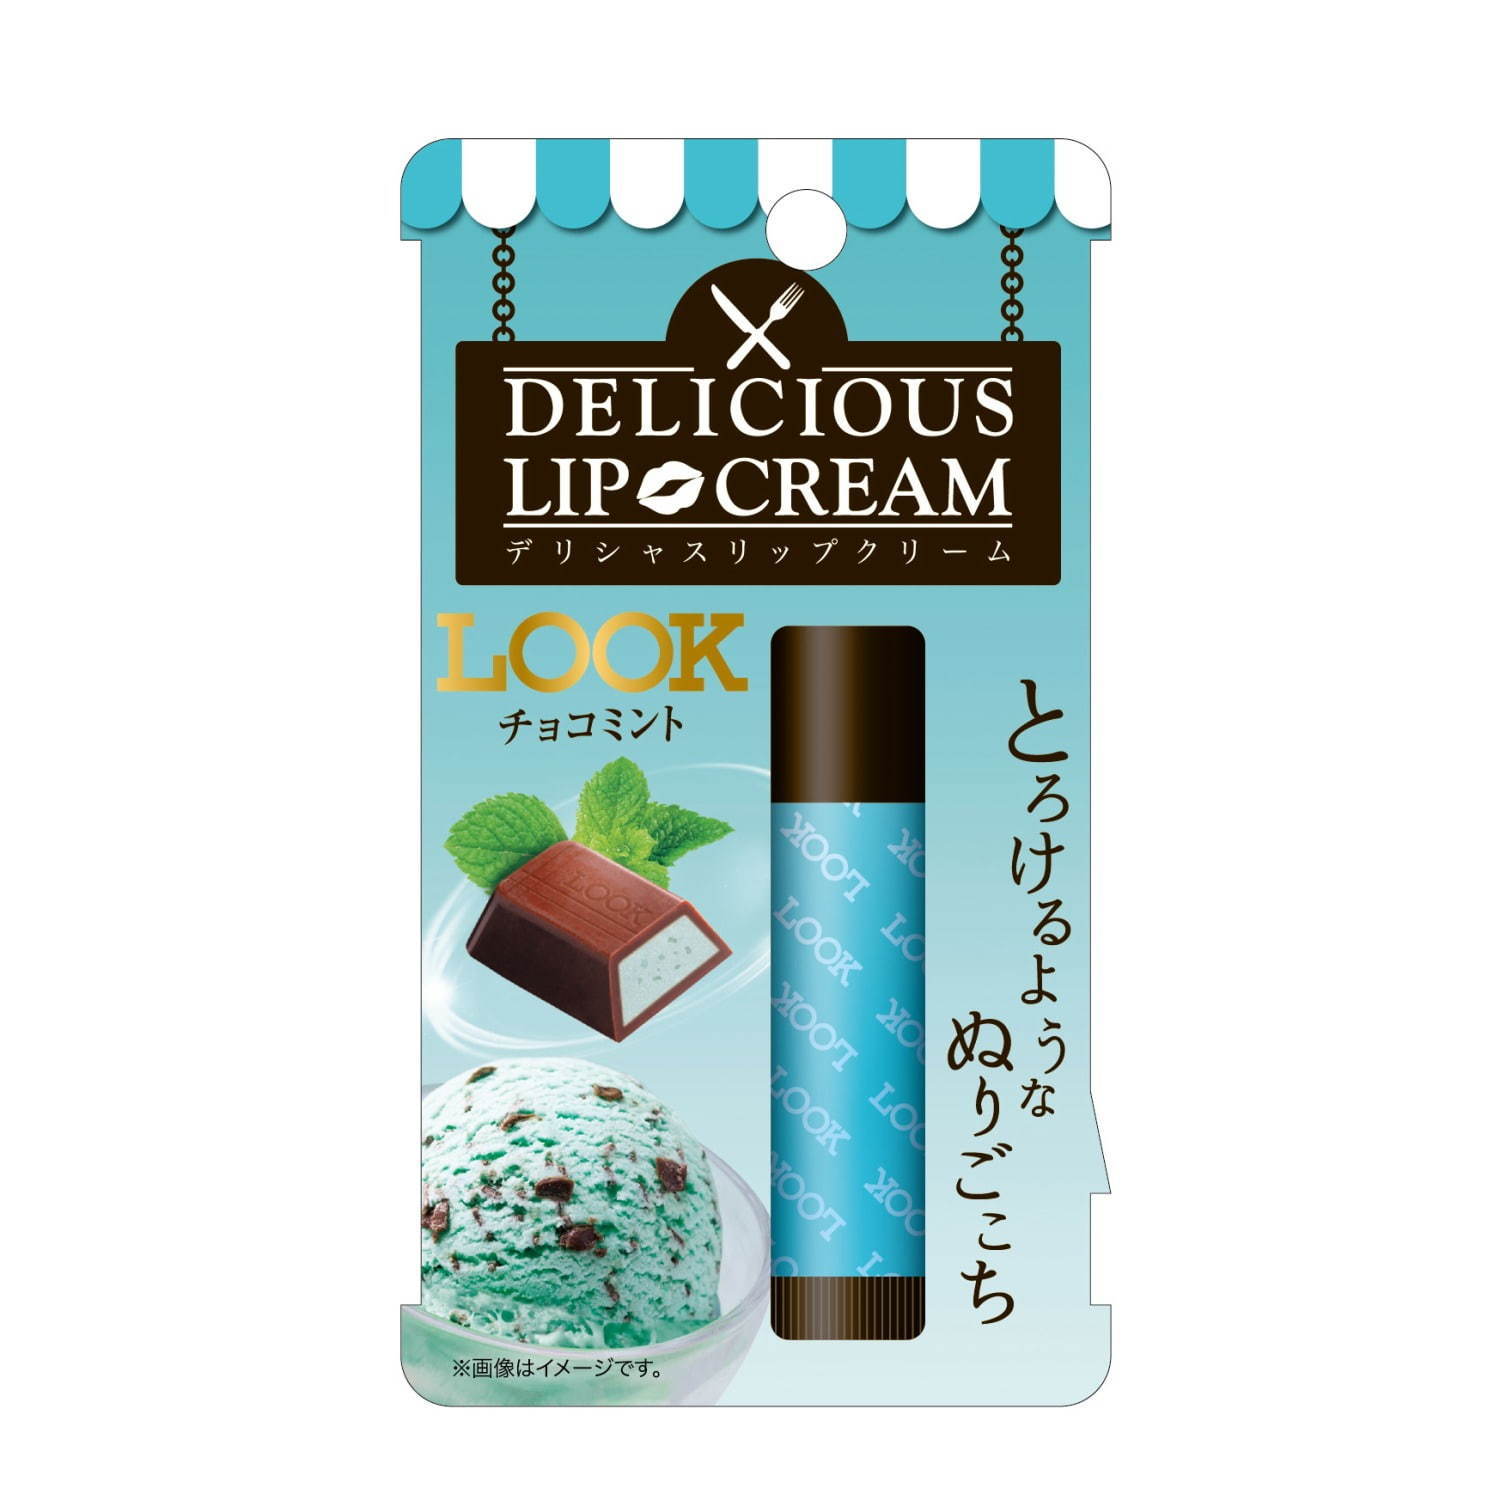 「LOOK チョコミントの香り」500円＋税